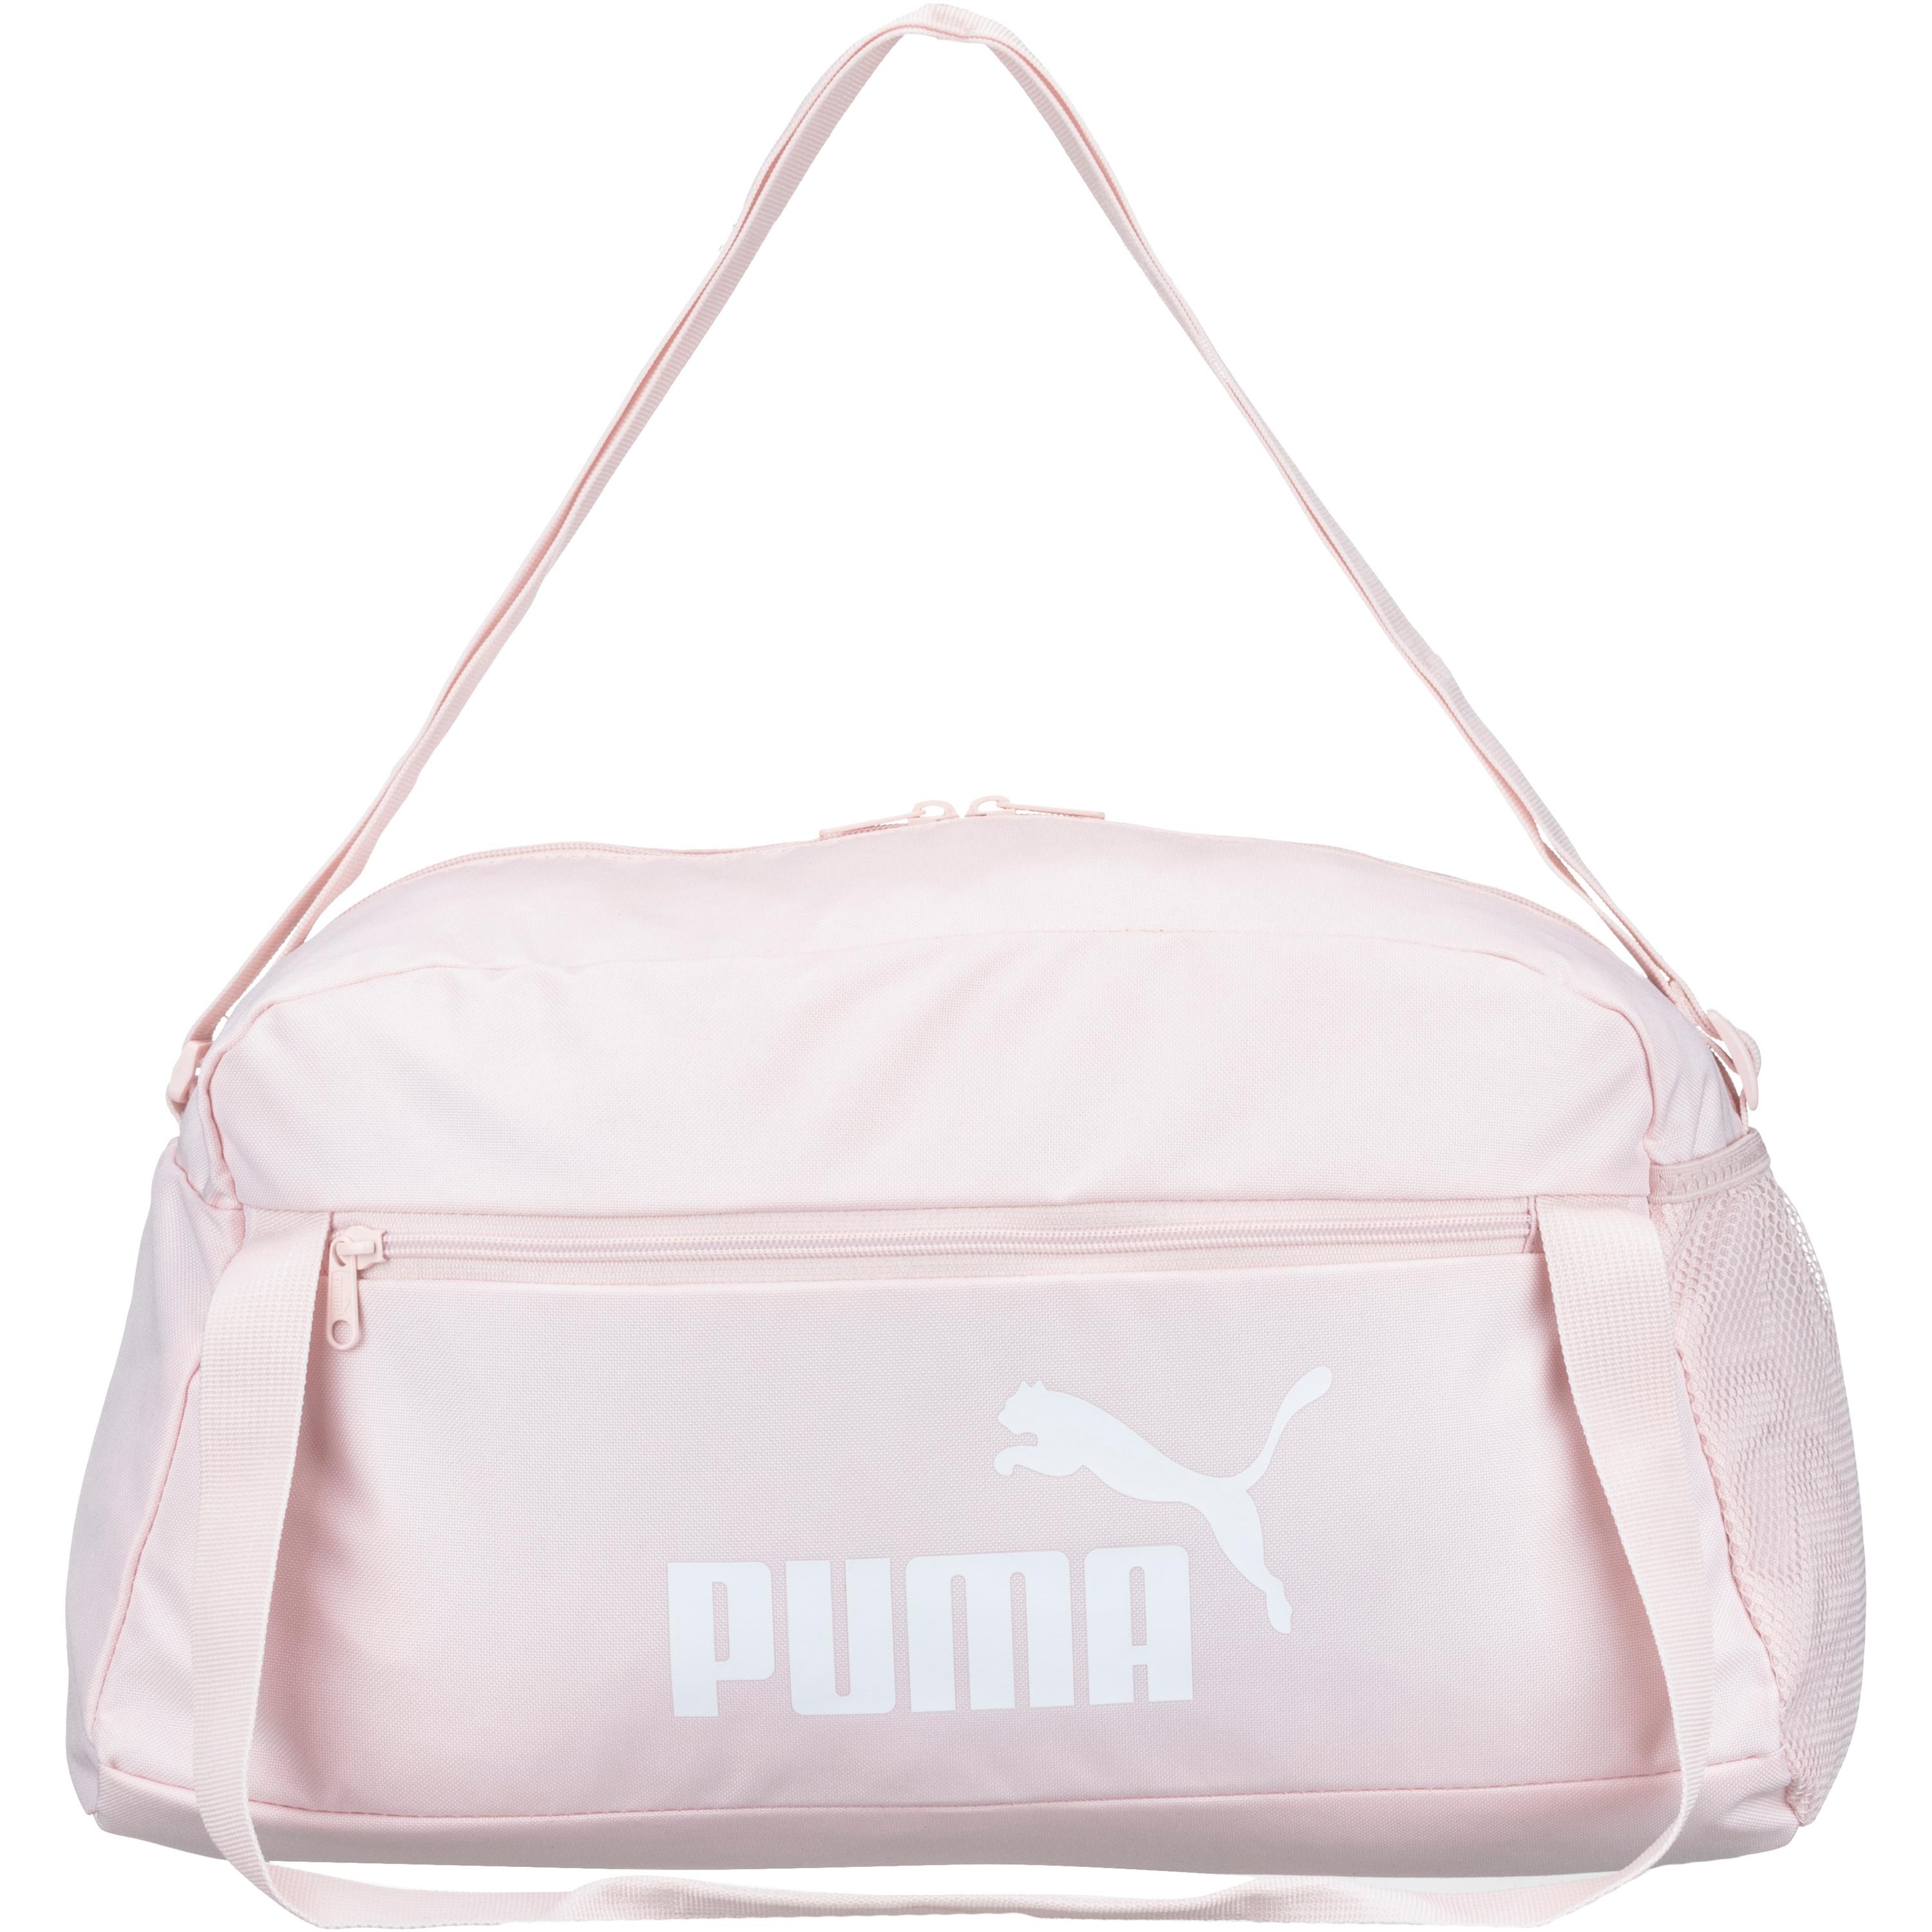 puma -  Phase Sporttasche Damen